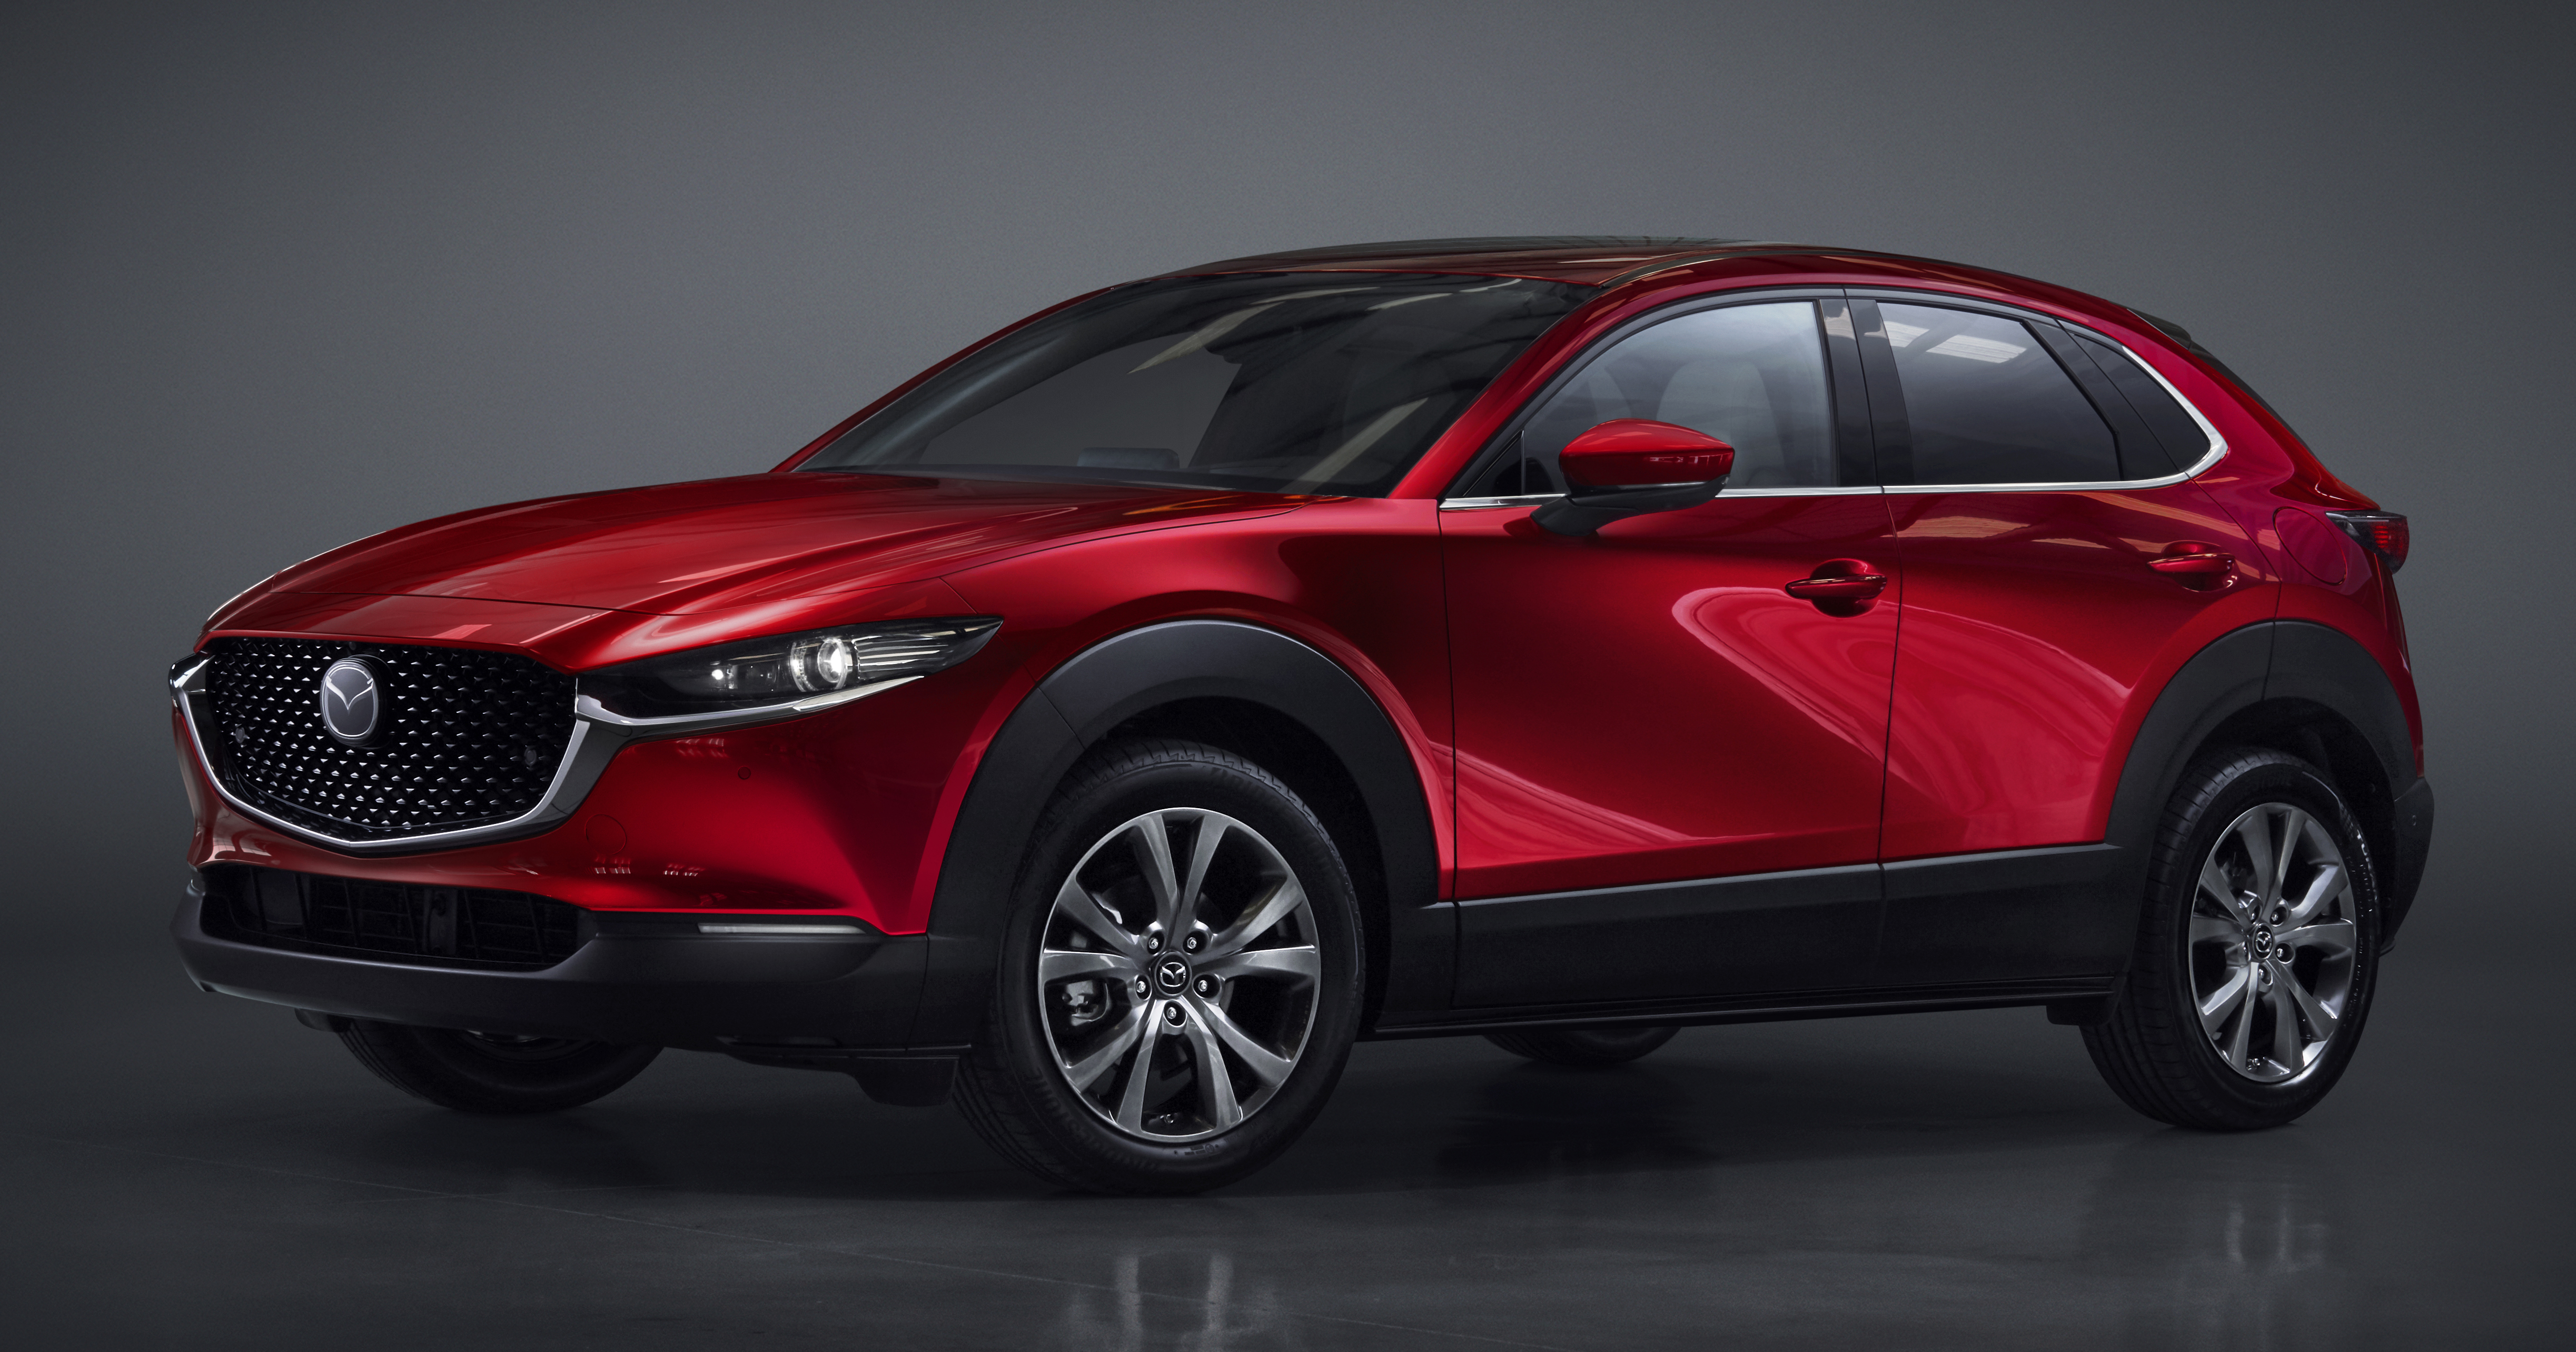 Mazda CX 30 makes its debut at Geneva Motor Show new SUV is 